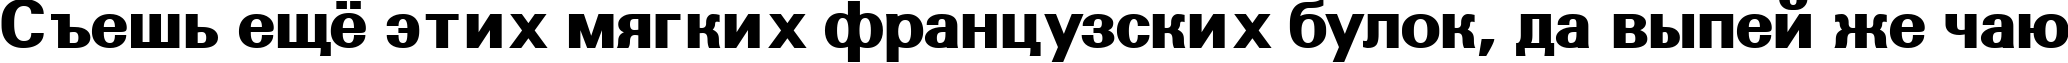 Пример написания шрифтом a_GroticExtraBold текста на русском